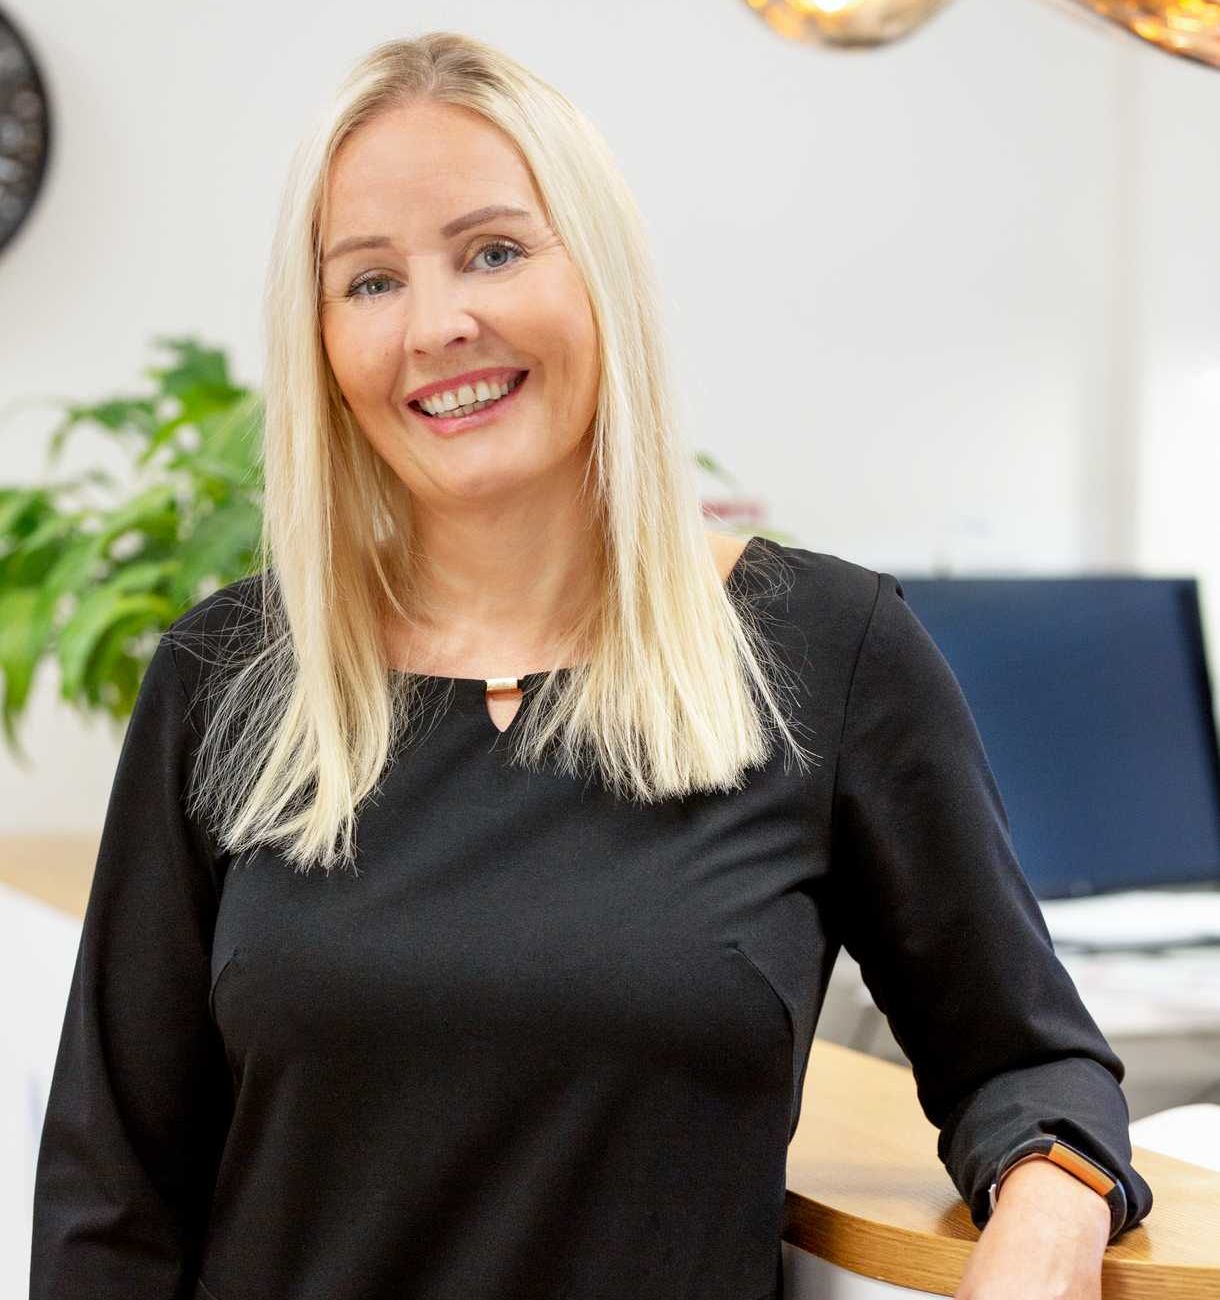 Minna Väänänen, Sales Director of Fresenius Medical Care Finland